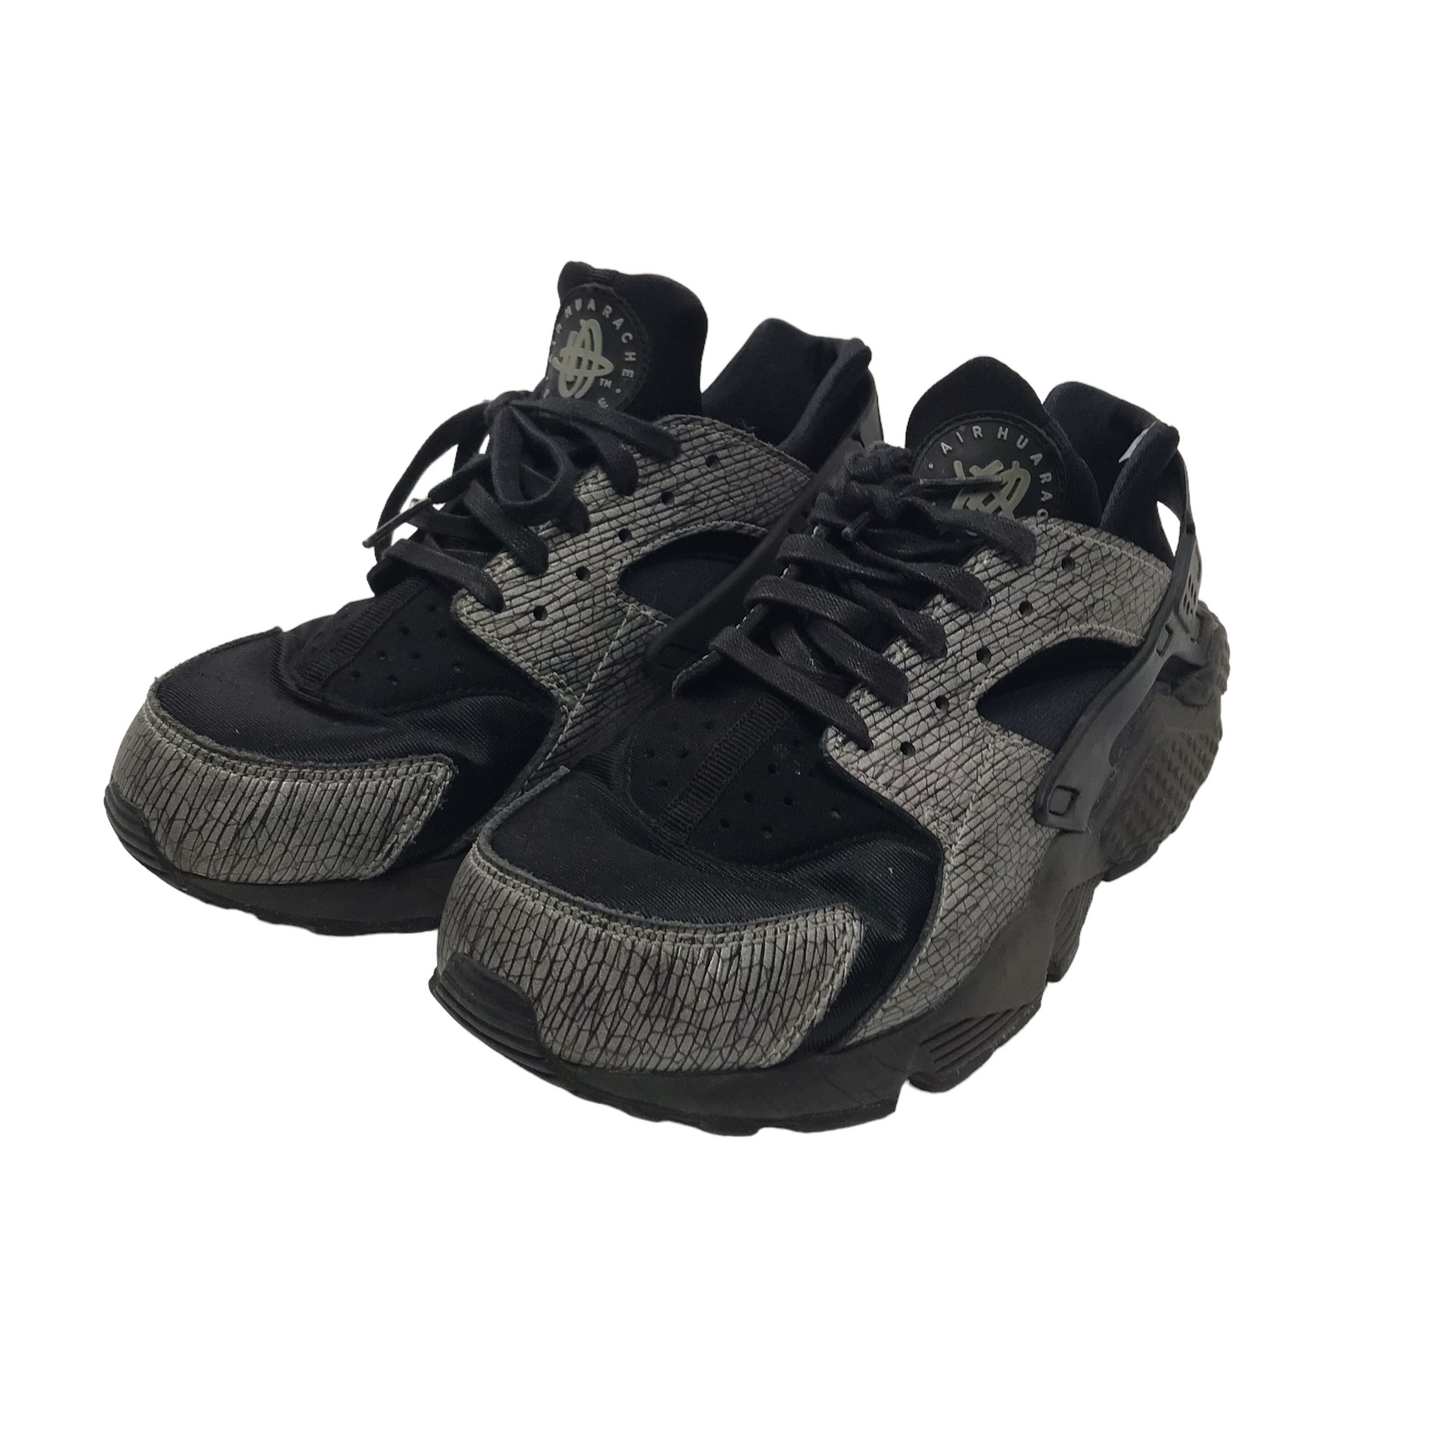 Nike Huarache Black Trainers Shoe Size 5.5